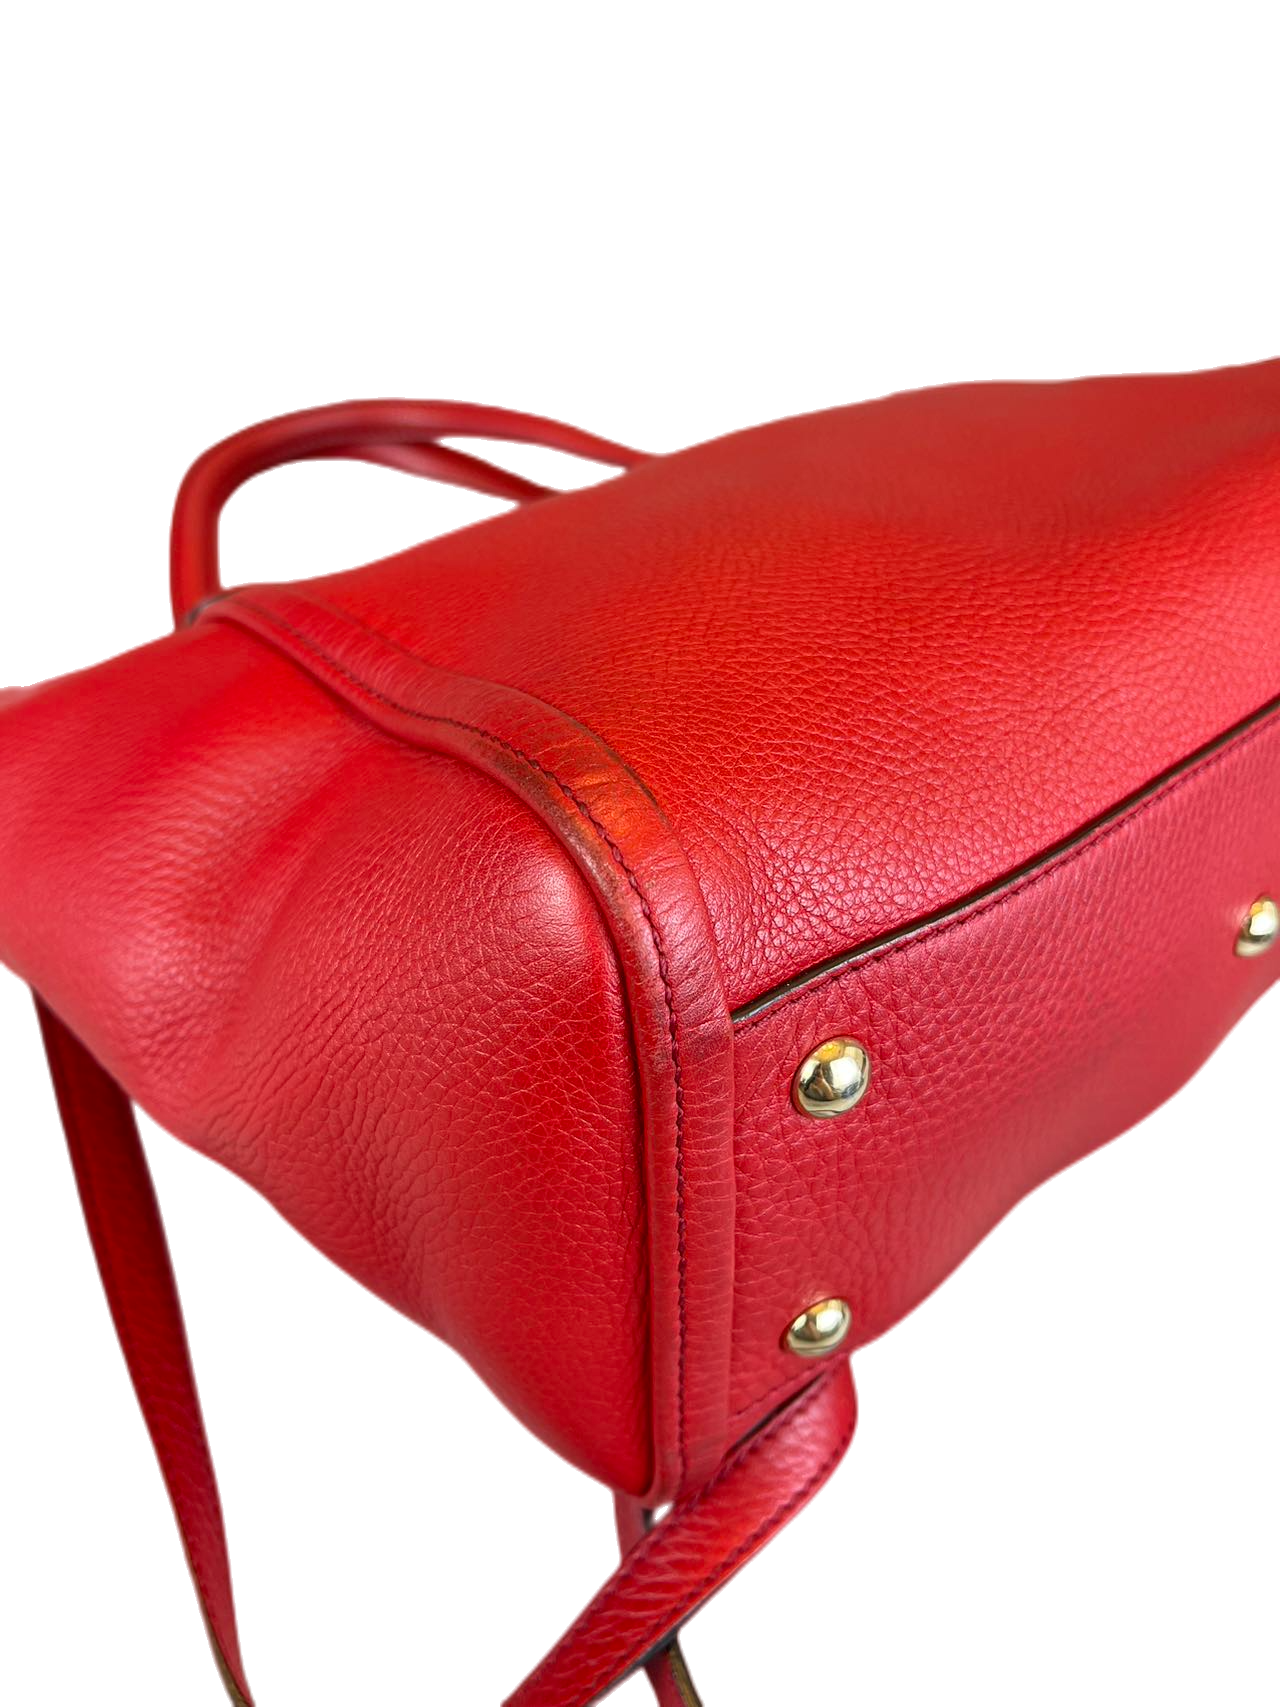 Preloved Gucci GG Logo Red Leather Soho Shoulder Bag